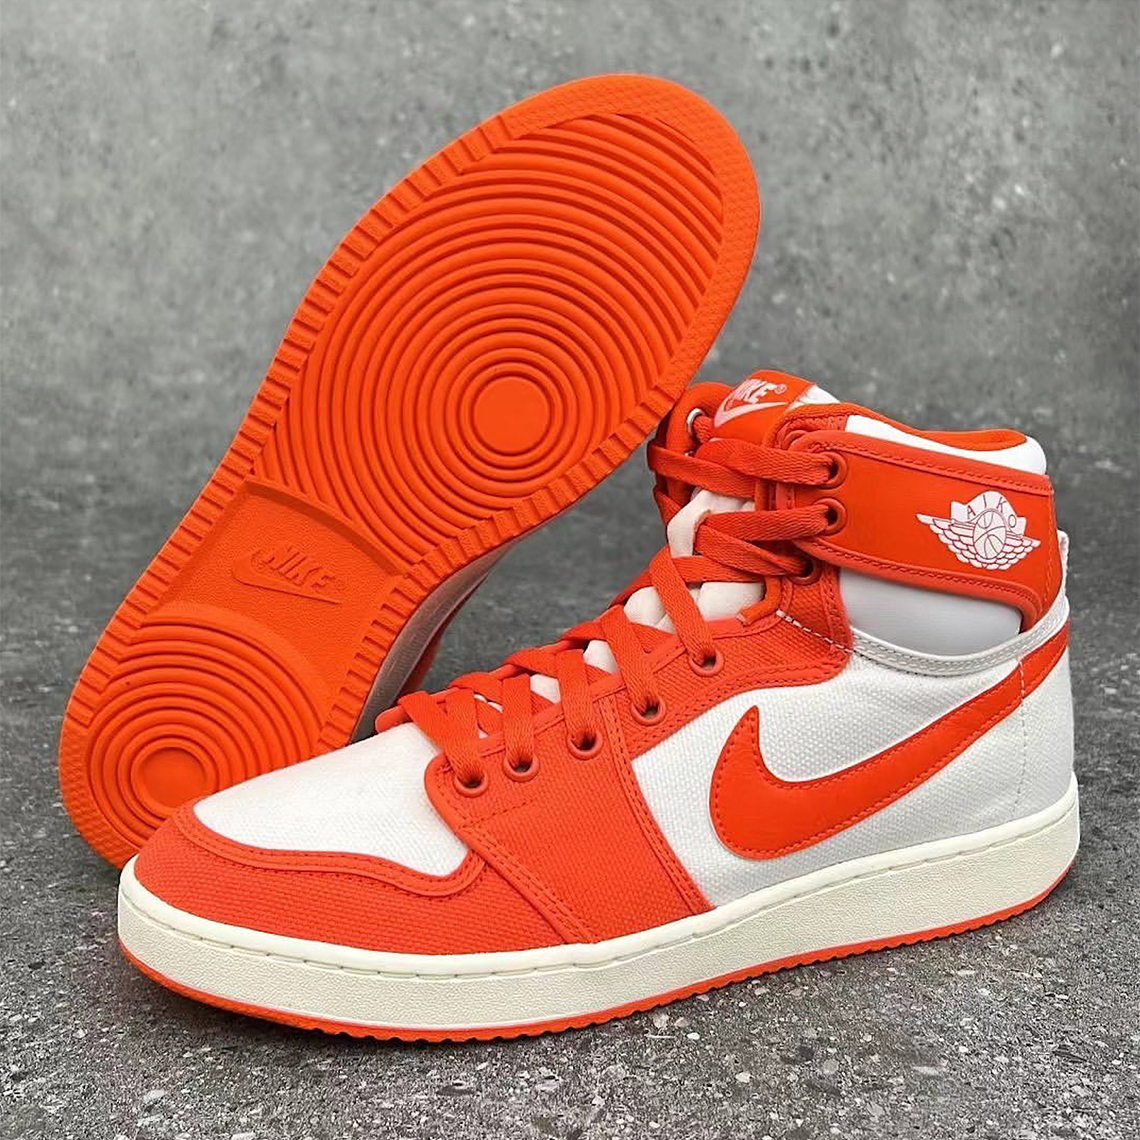 Air Jordan orange and green jordan 1 1 KO "Syracuse" Release Info | SneakerNews.com